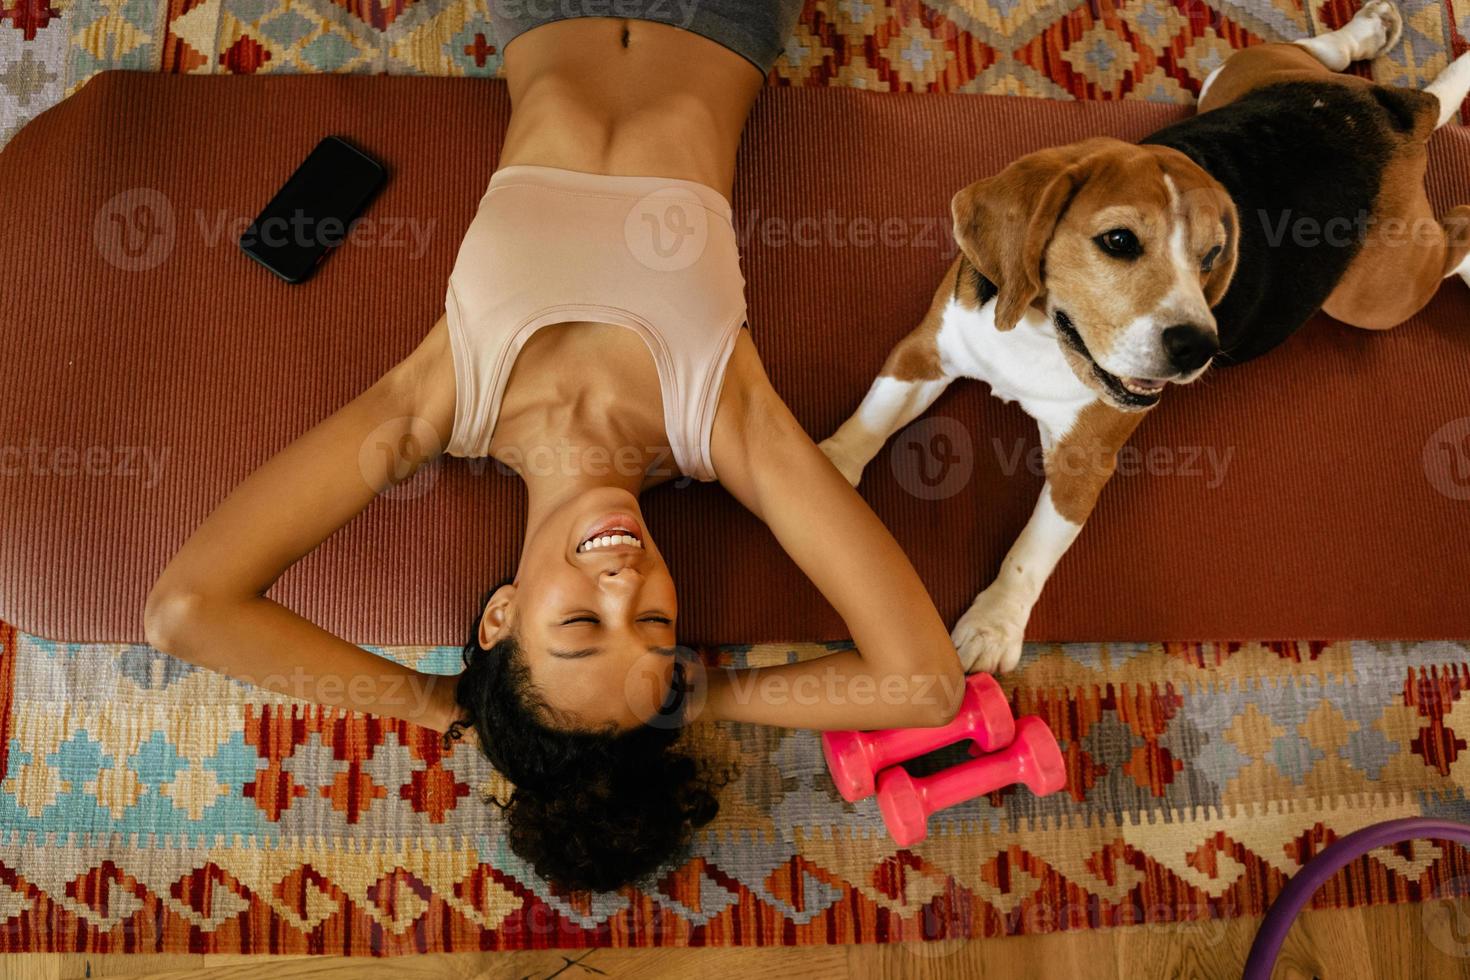 zwarte jonge vrouw die lacht terwijl ze met haar hond op de mat ligt foto